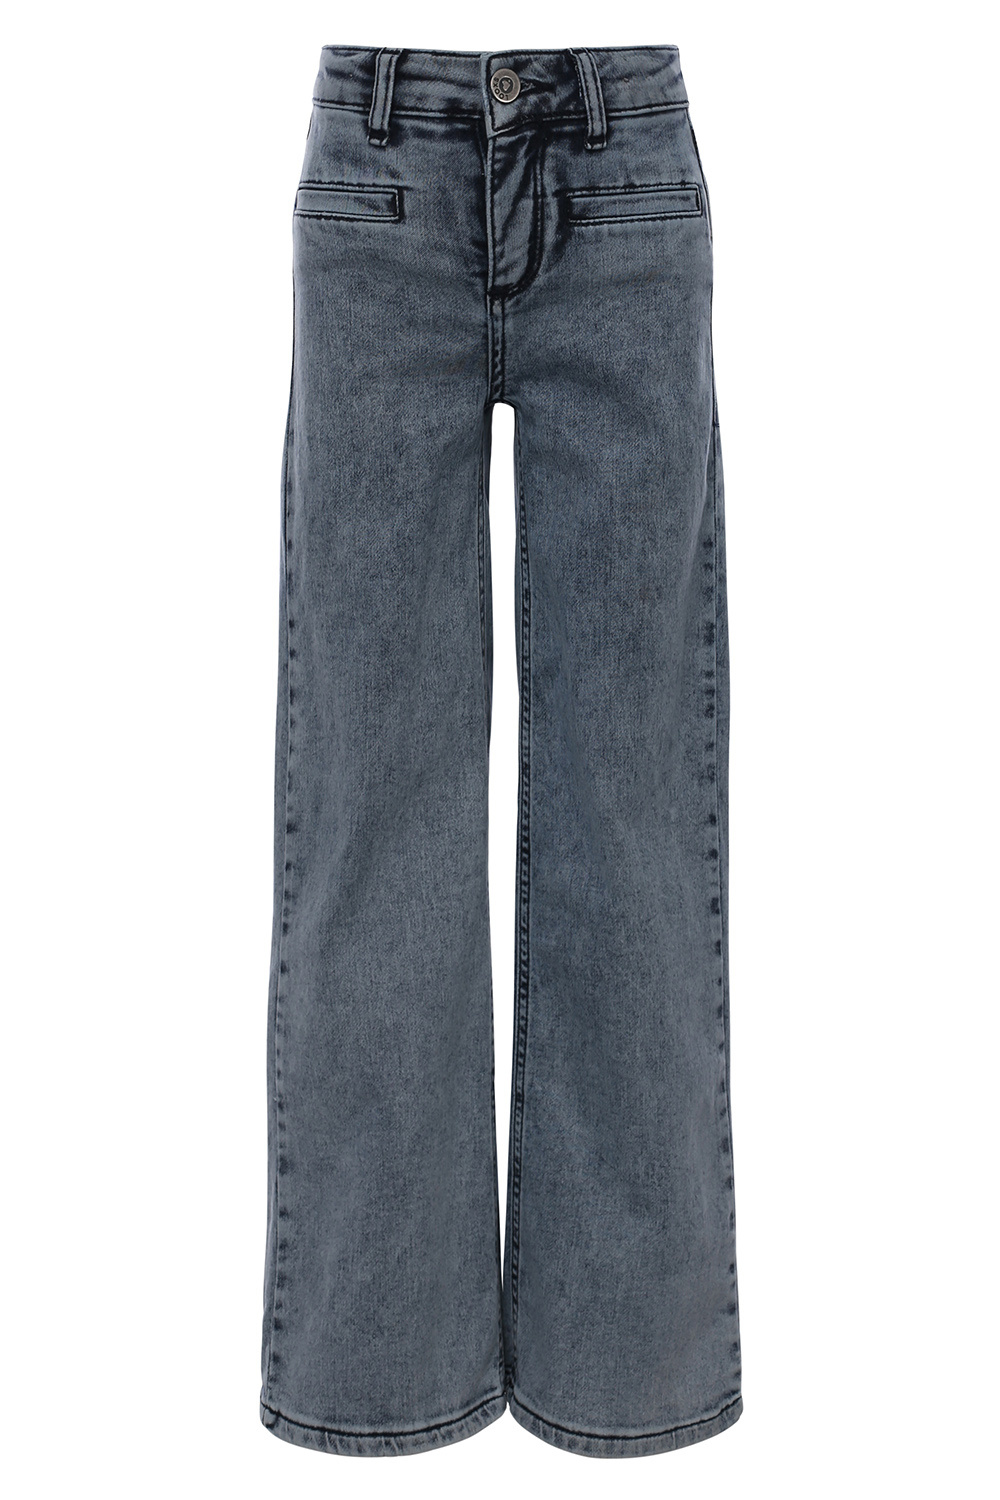 Looxs Revolution 2311-5624-165 Meisjes Broek - Maat 128 - Jeans Blauw van Katoen